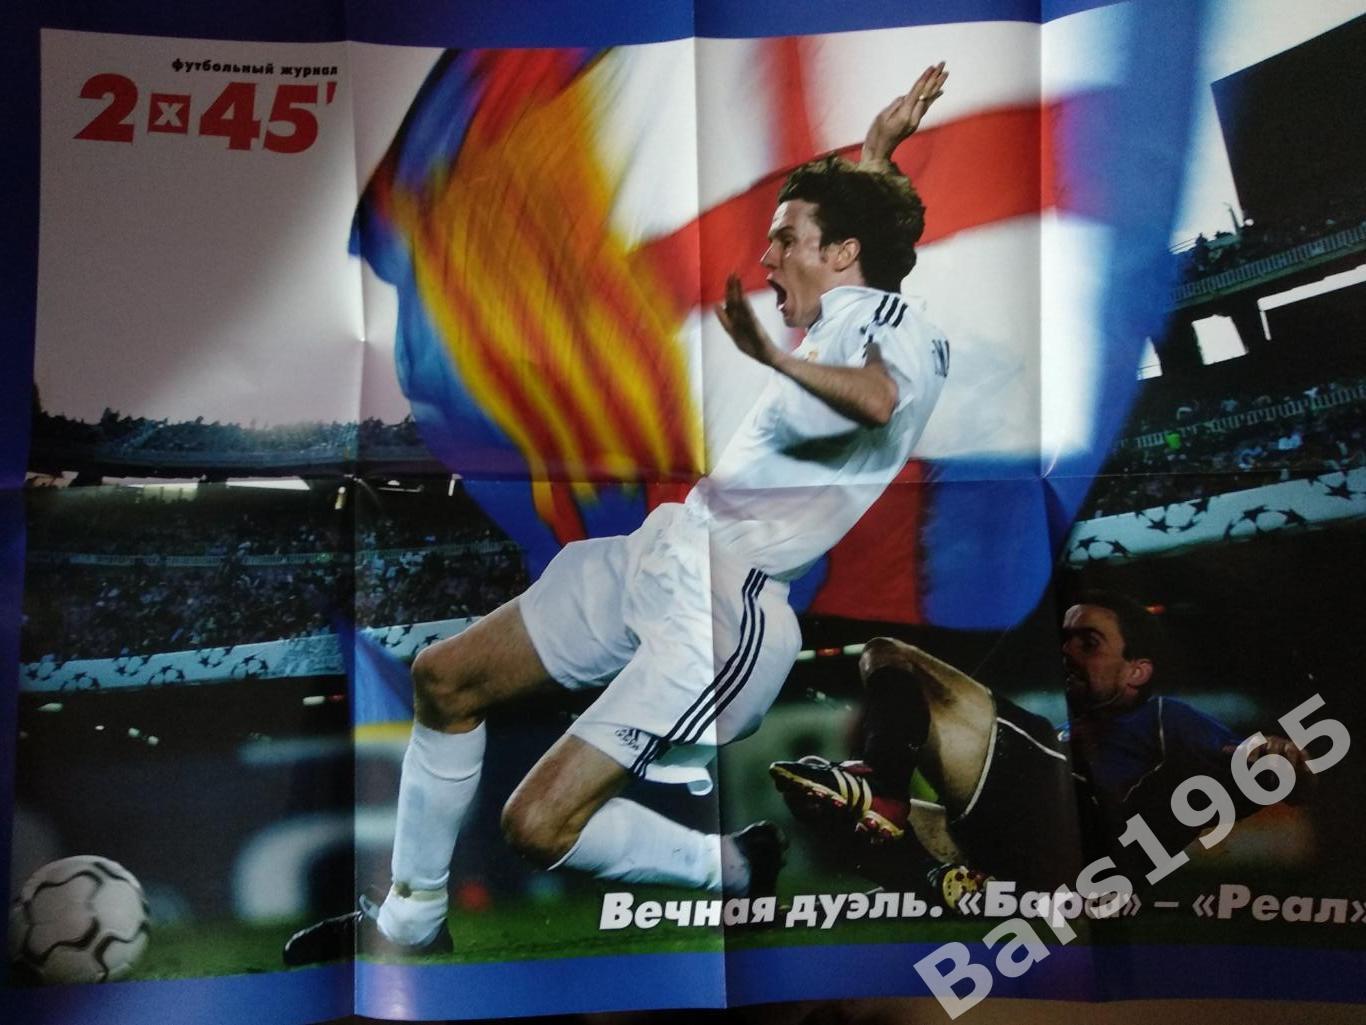 Плакат Вечная дуэль Барса - Реал